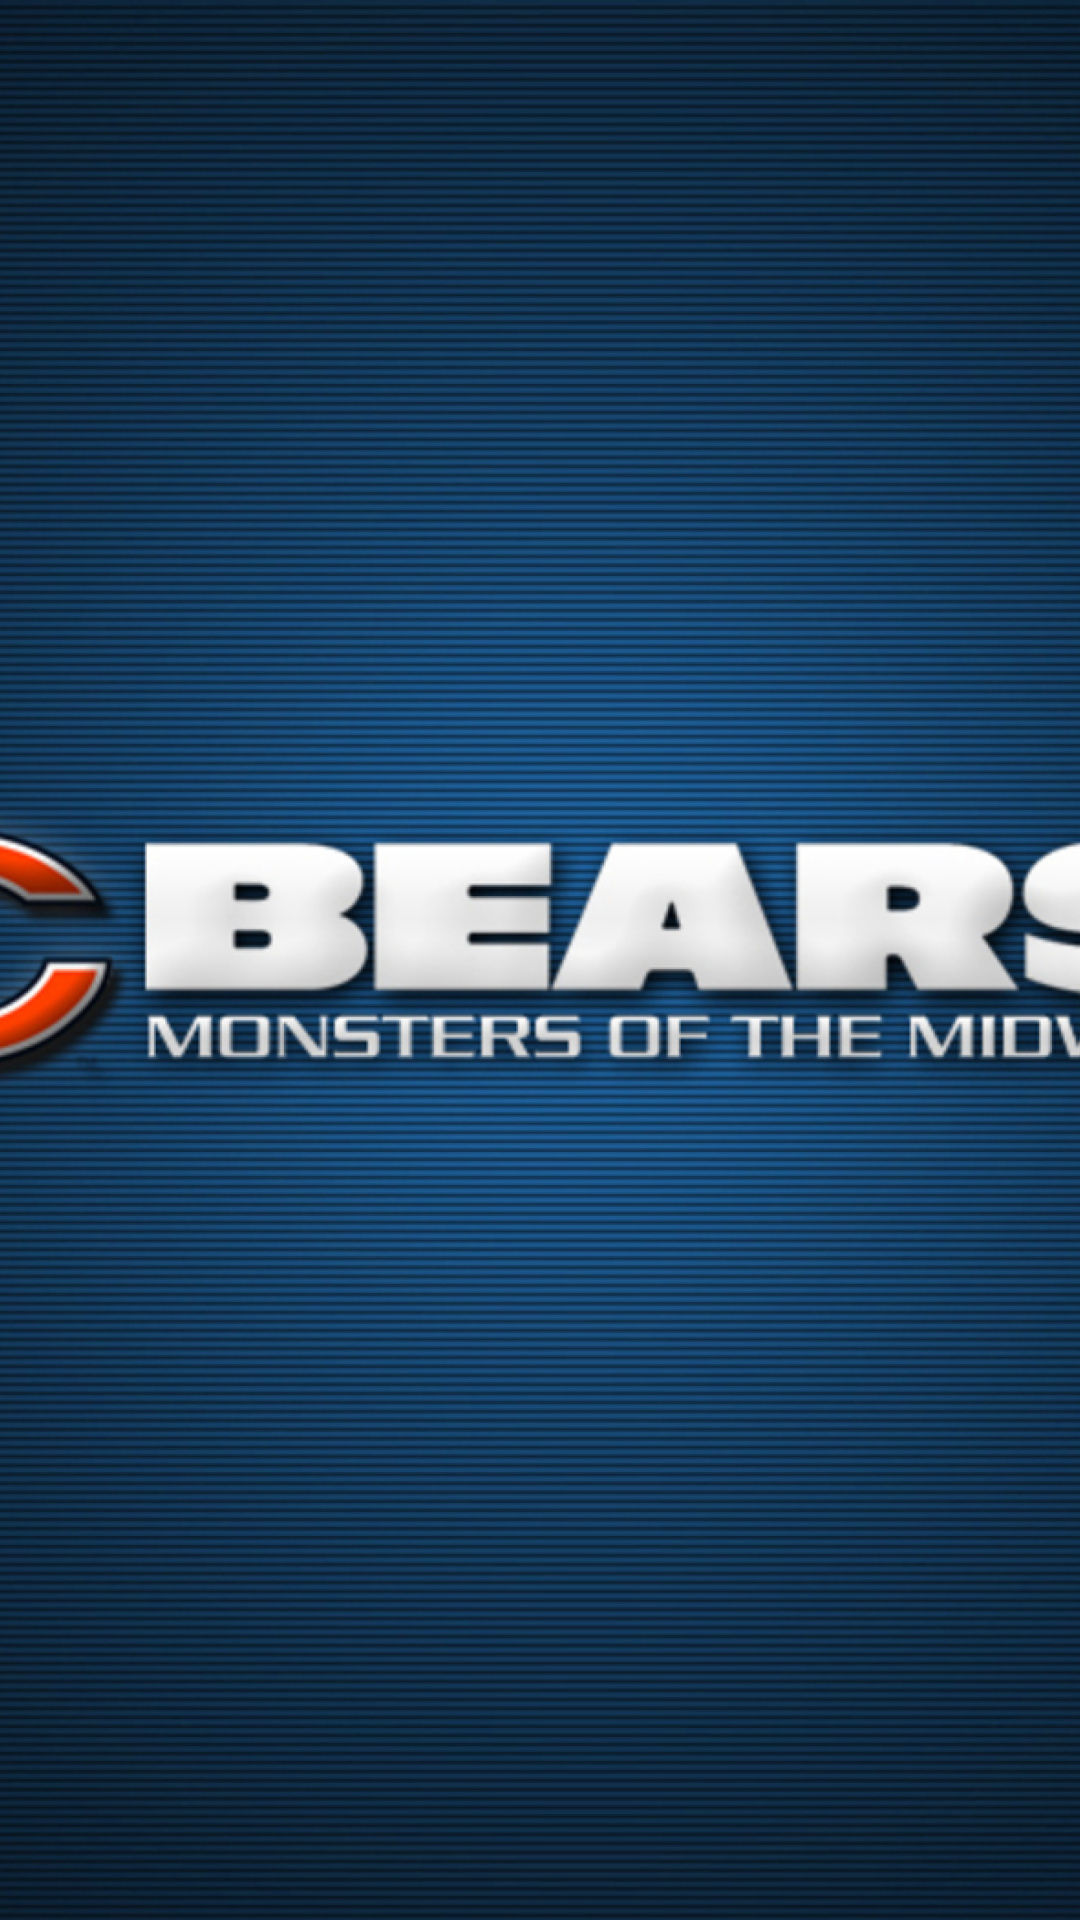 Chicago Bears NFL League screenshot #1 1080x1920